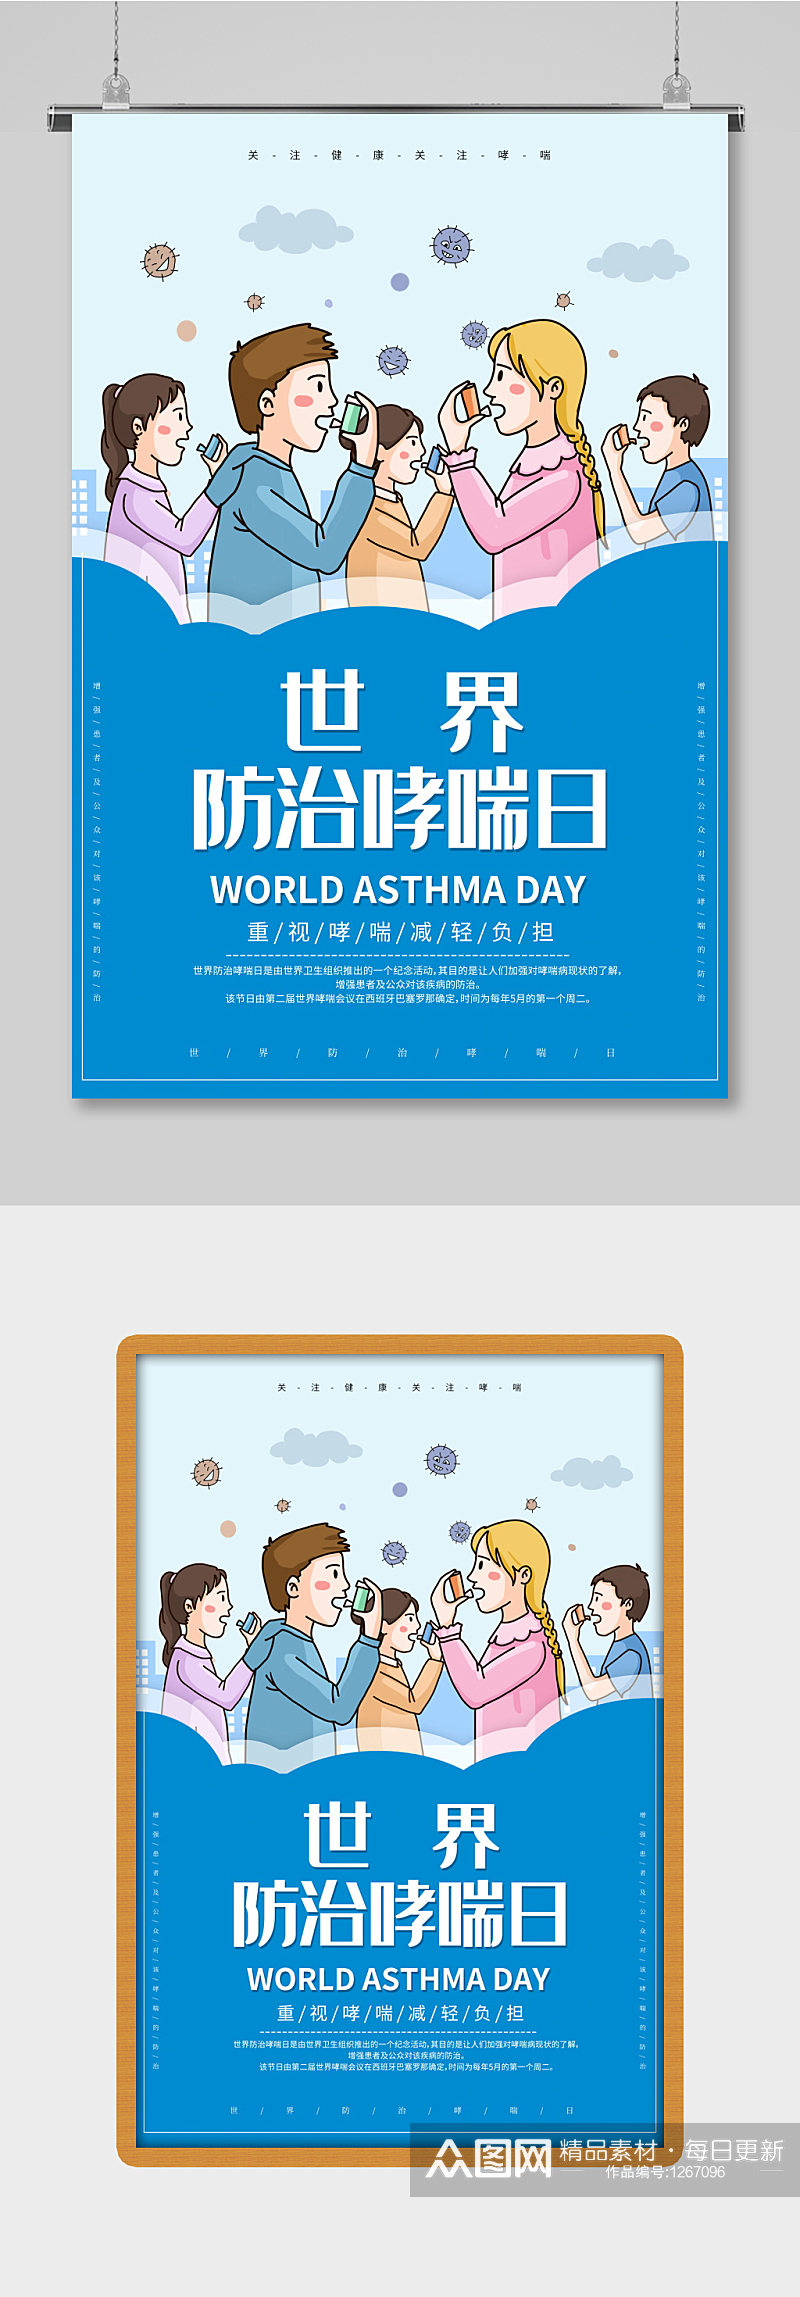 世界哮喘日海报蓝色调素材